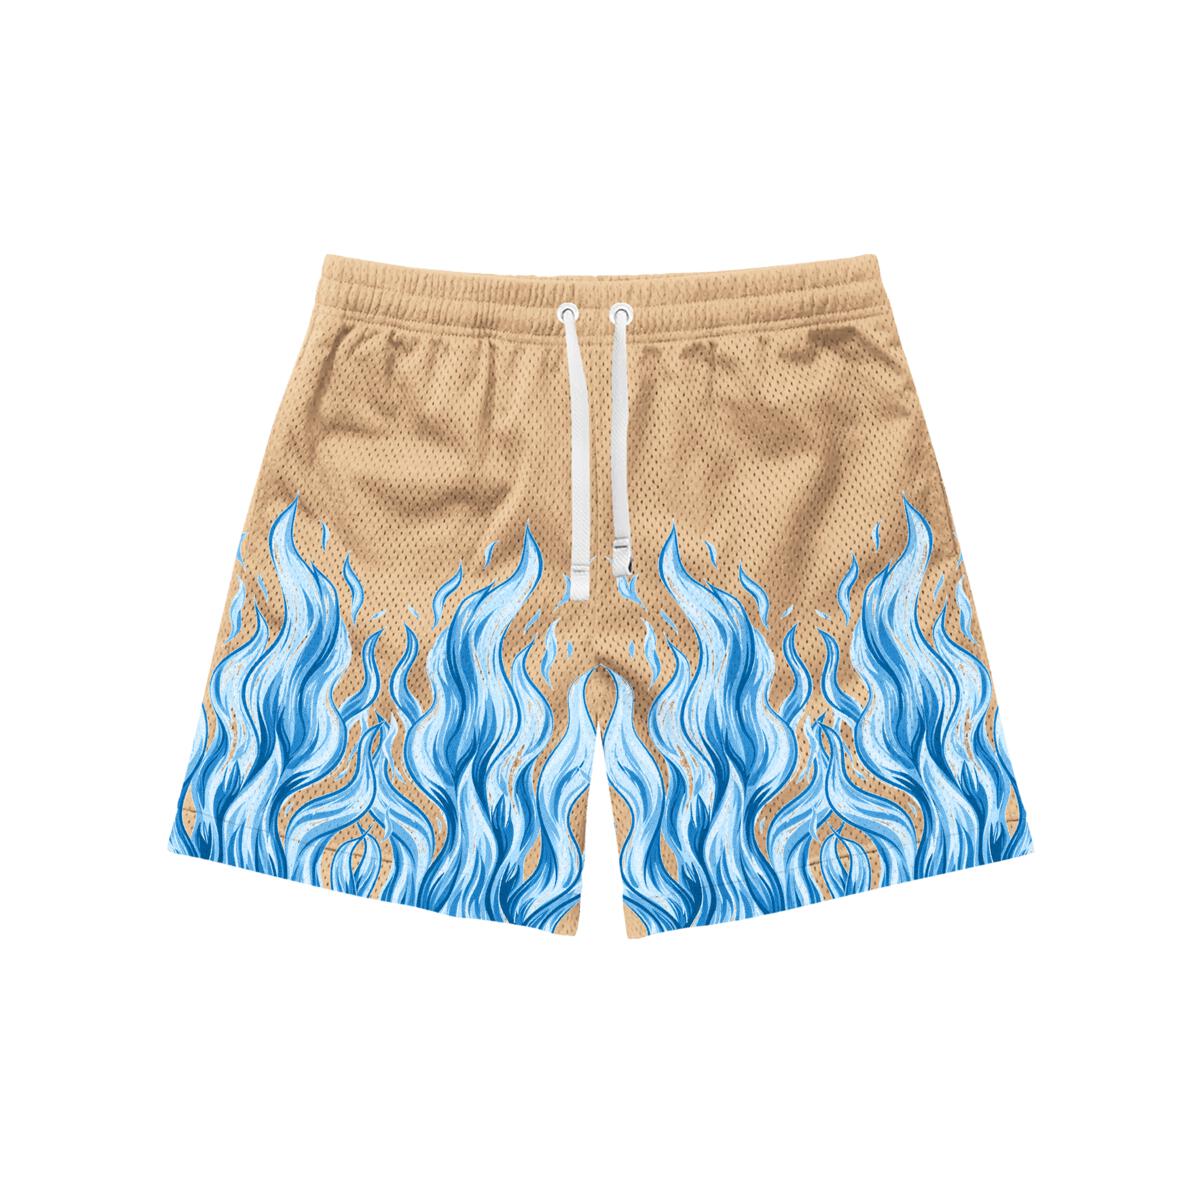 Wknd Beach Babe Shorts (Tan)